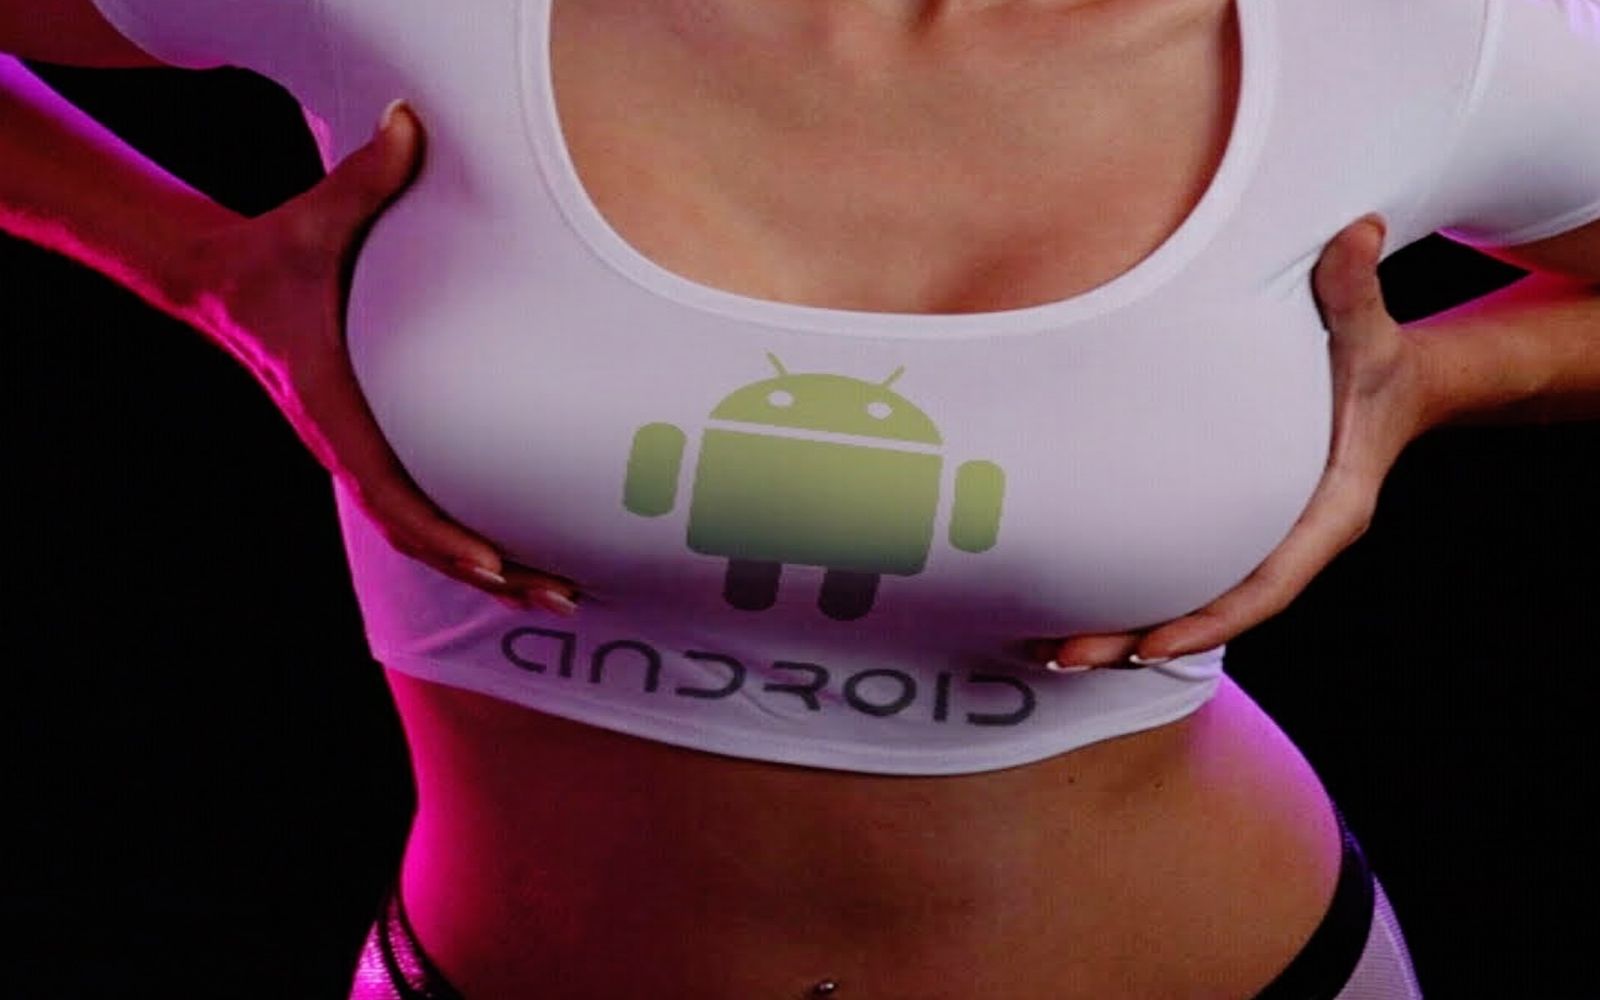 fond d'écran hd chaud pour android,épaule,poitrine,bouche,corps humain,sous vêtement